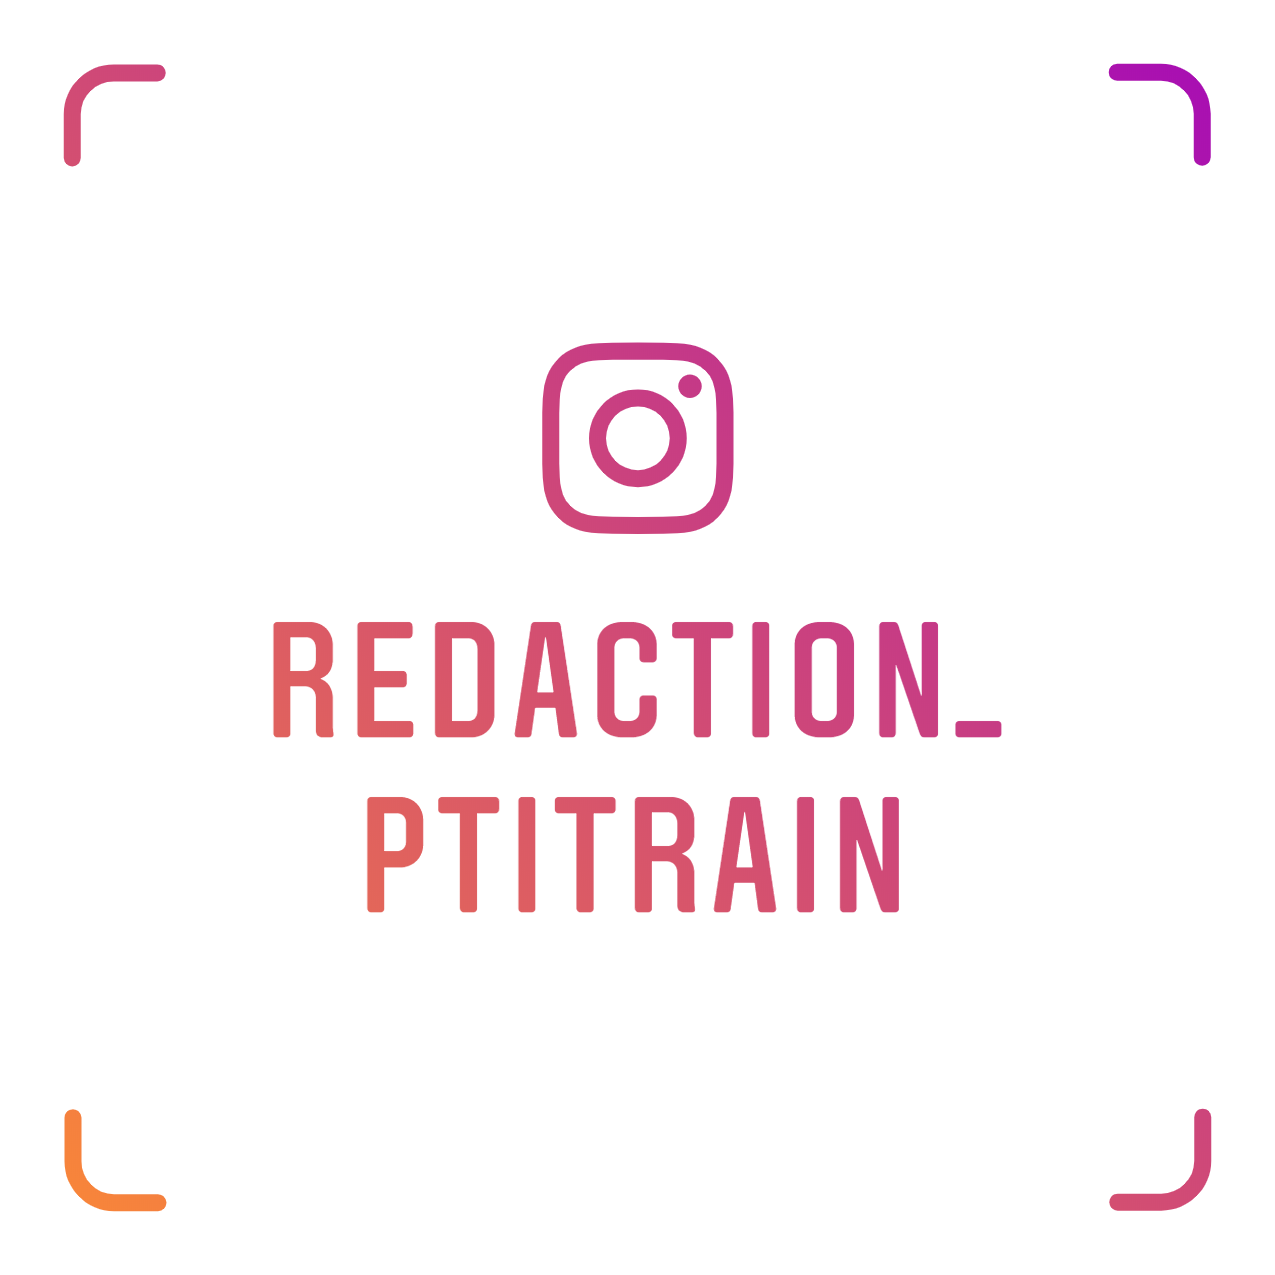 Suivez-nous sur Instagram